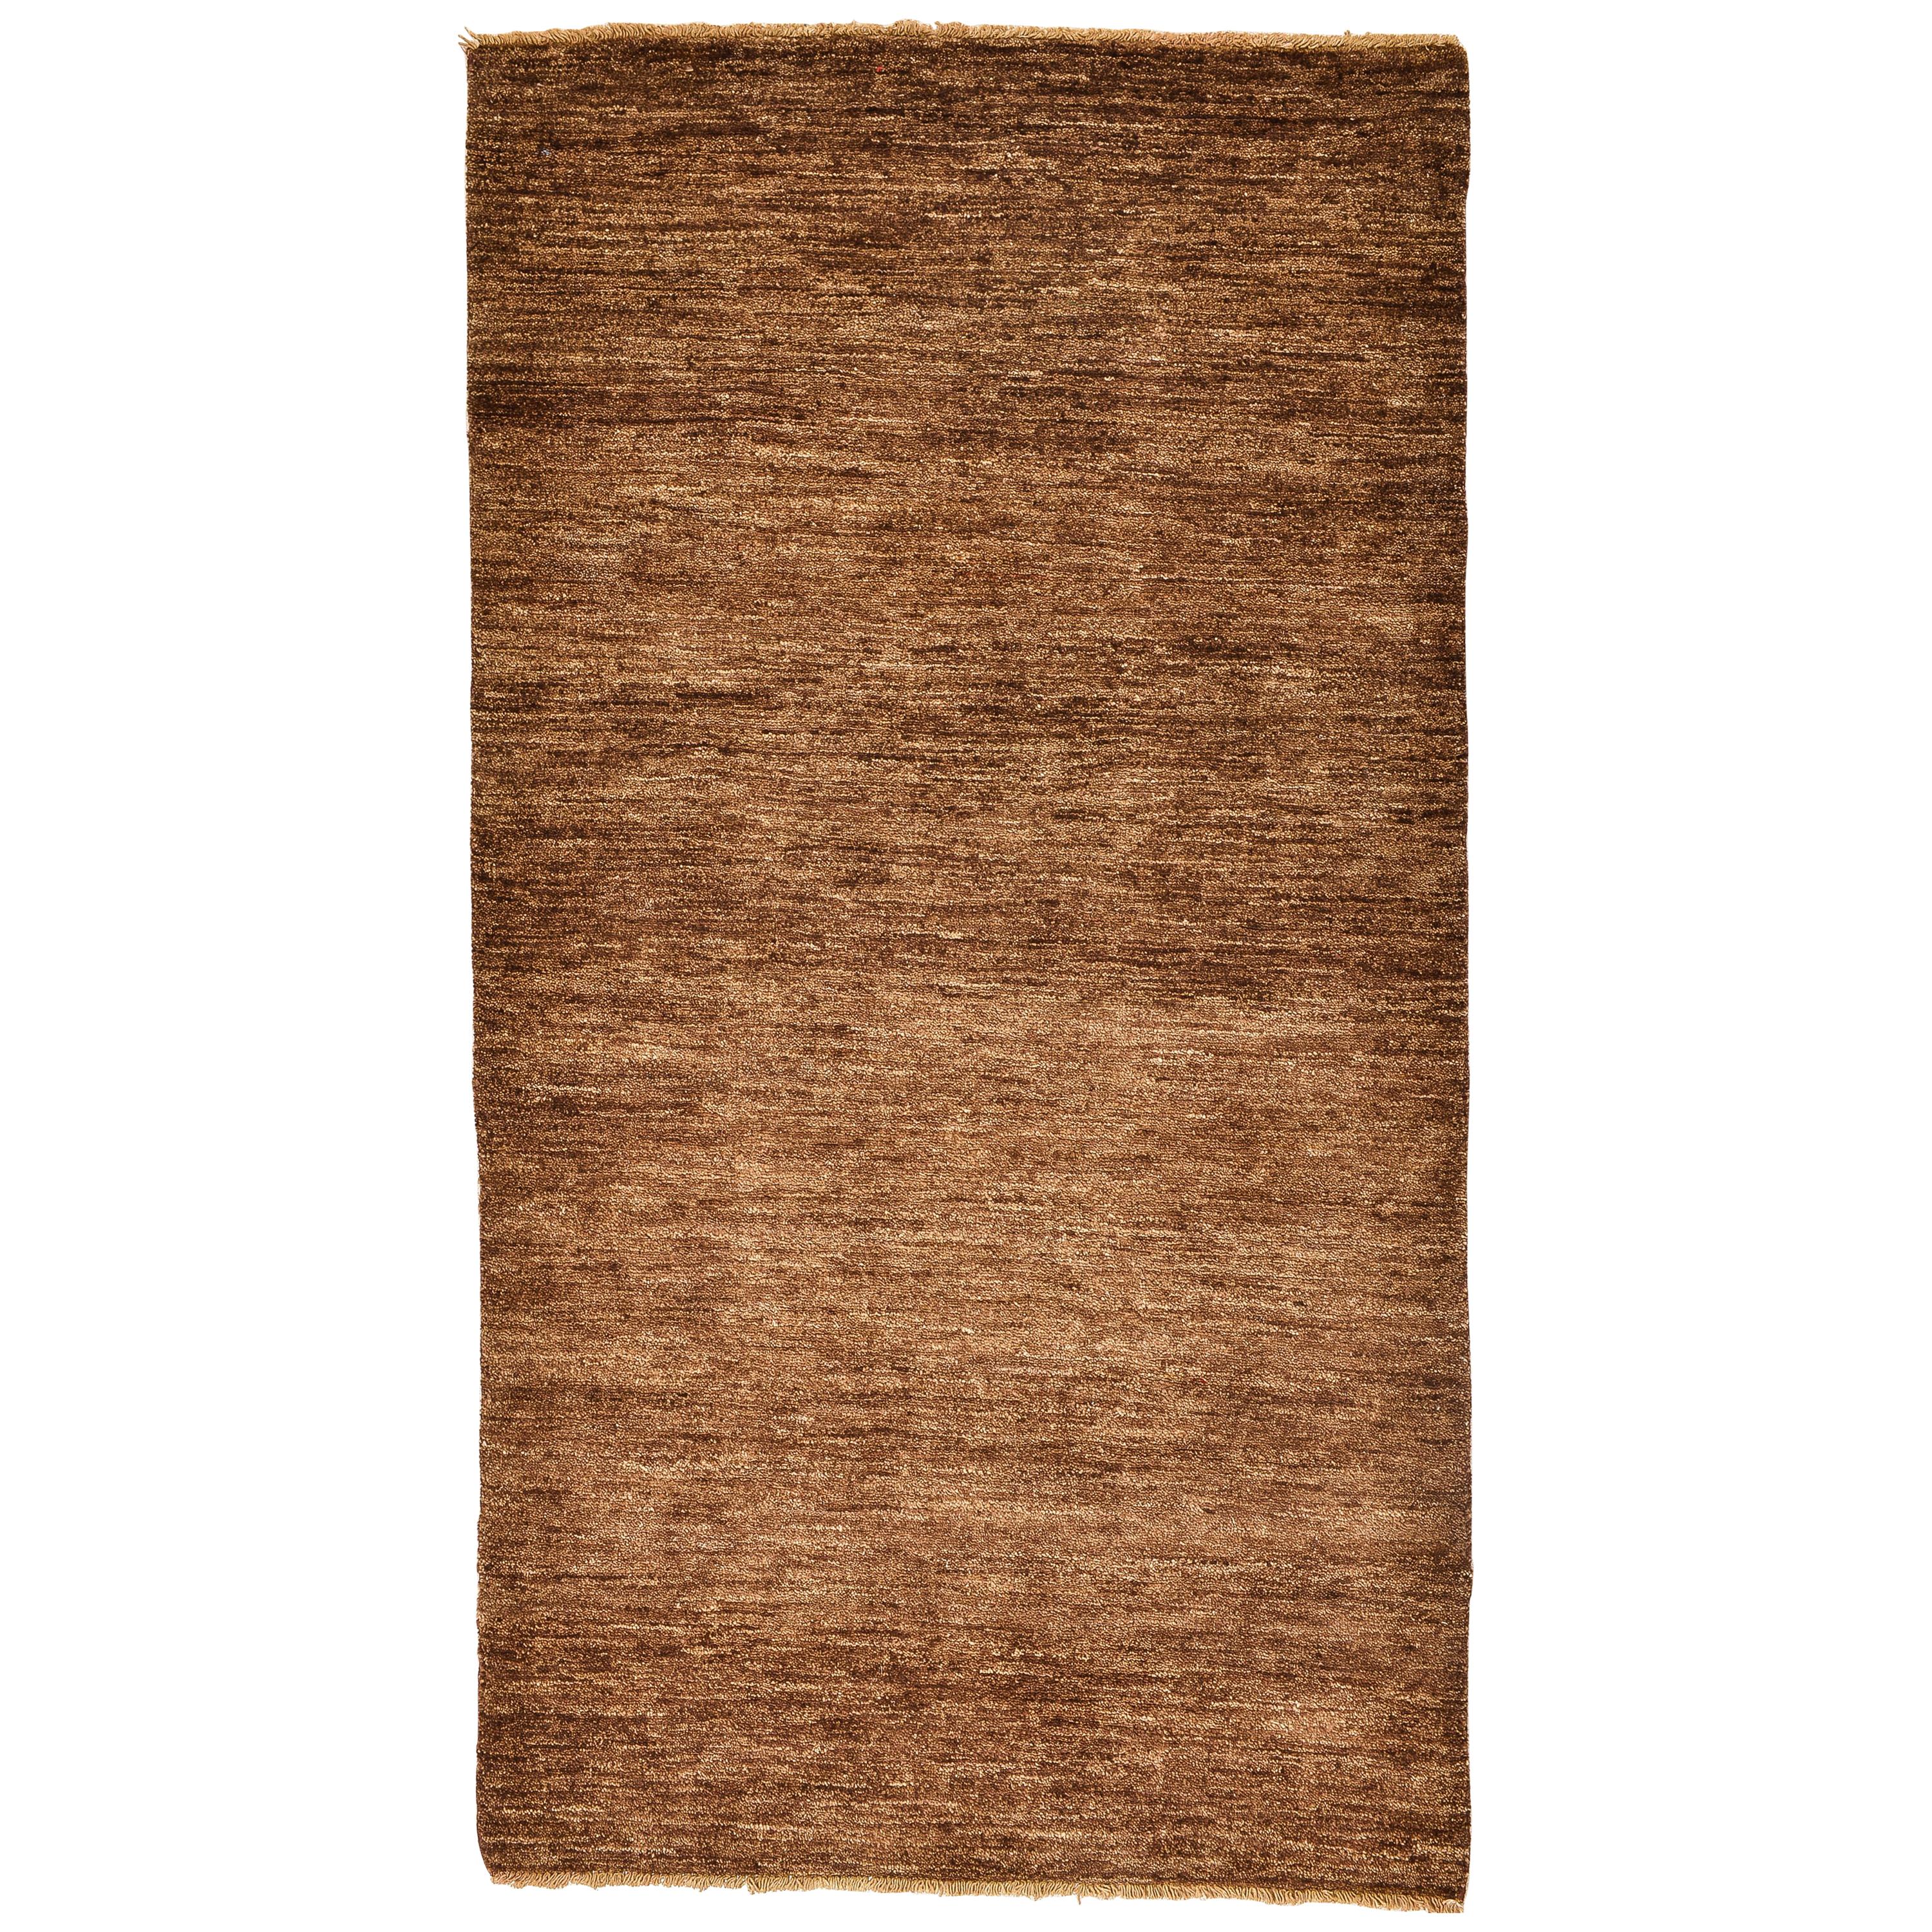 Minimalist  Modern Brown Afghan Carpet or Rug